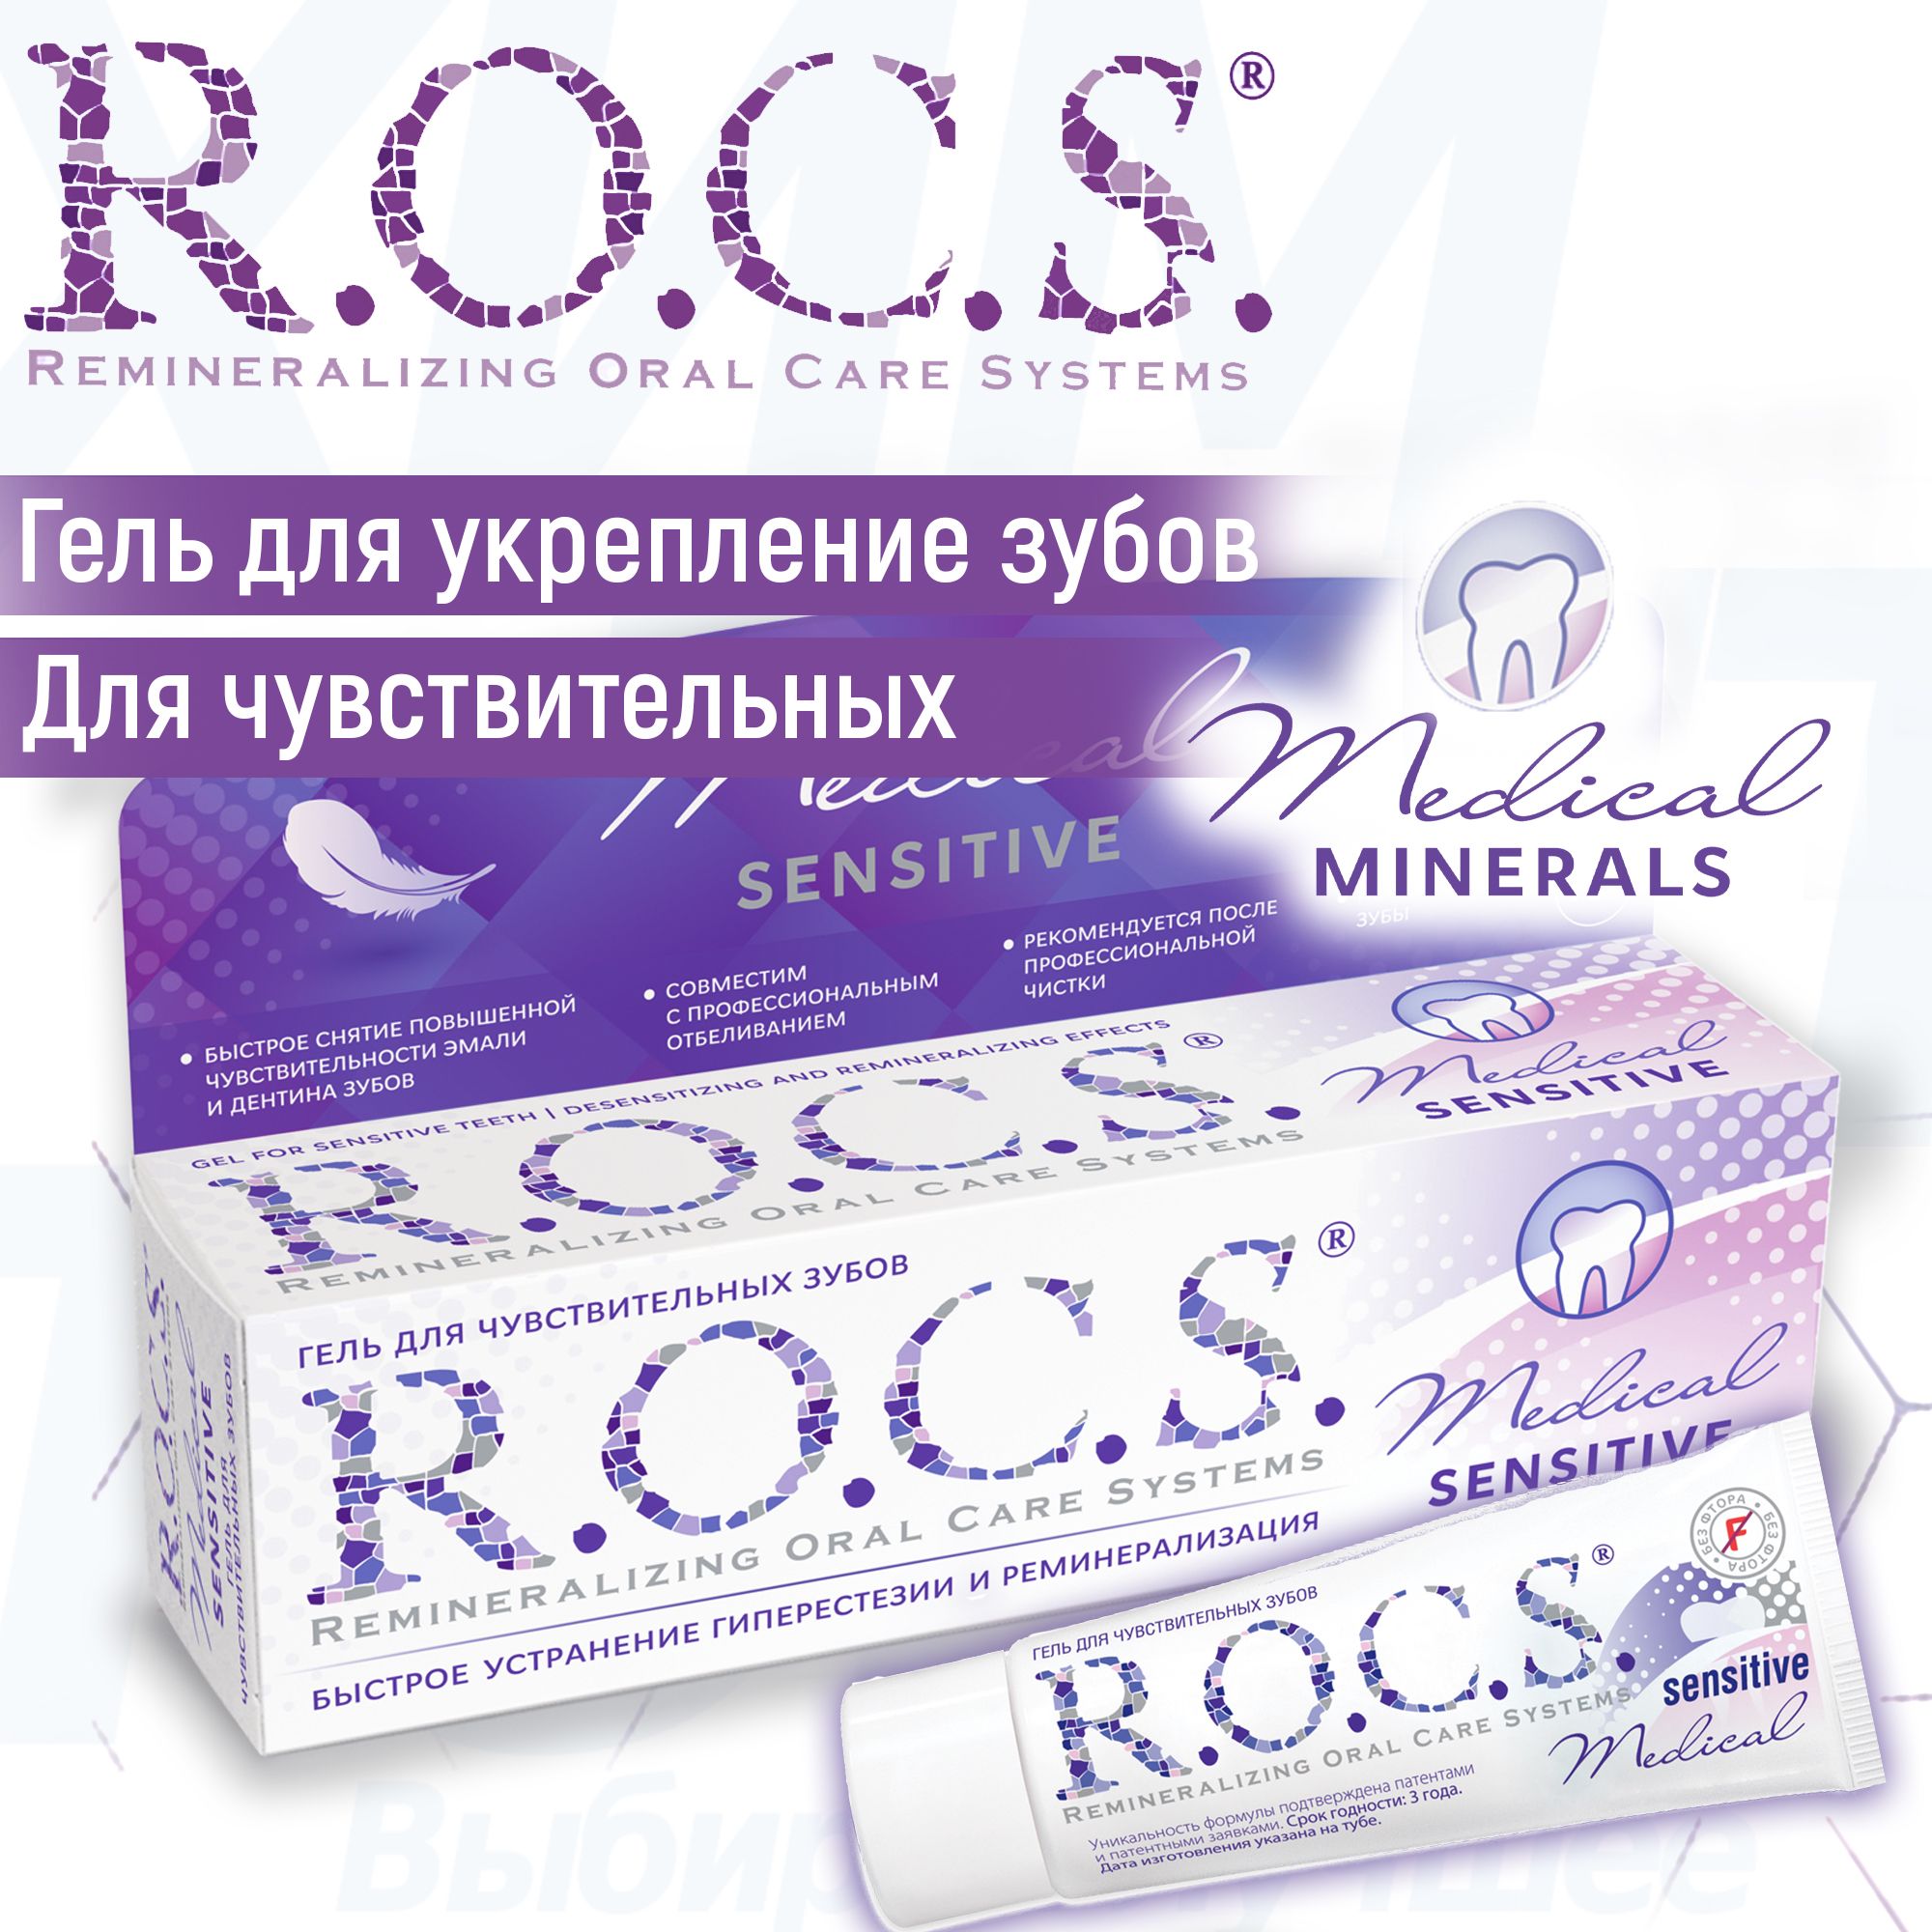 Рокс минералс гель купить. Гель Рокс Сенситив для чувствительных зубов. Rocs Medical Minerals гель. Rocs Medical гель реминерализирующий. Rocs Medical Minerals для чувствительных зубов.